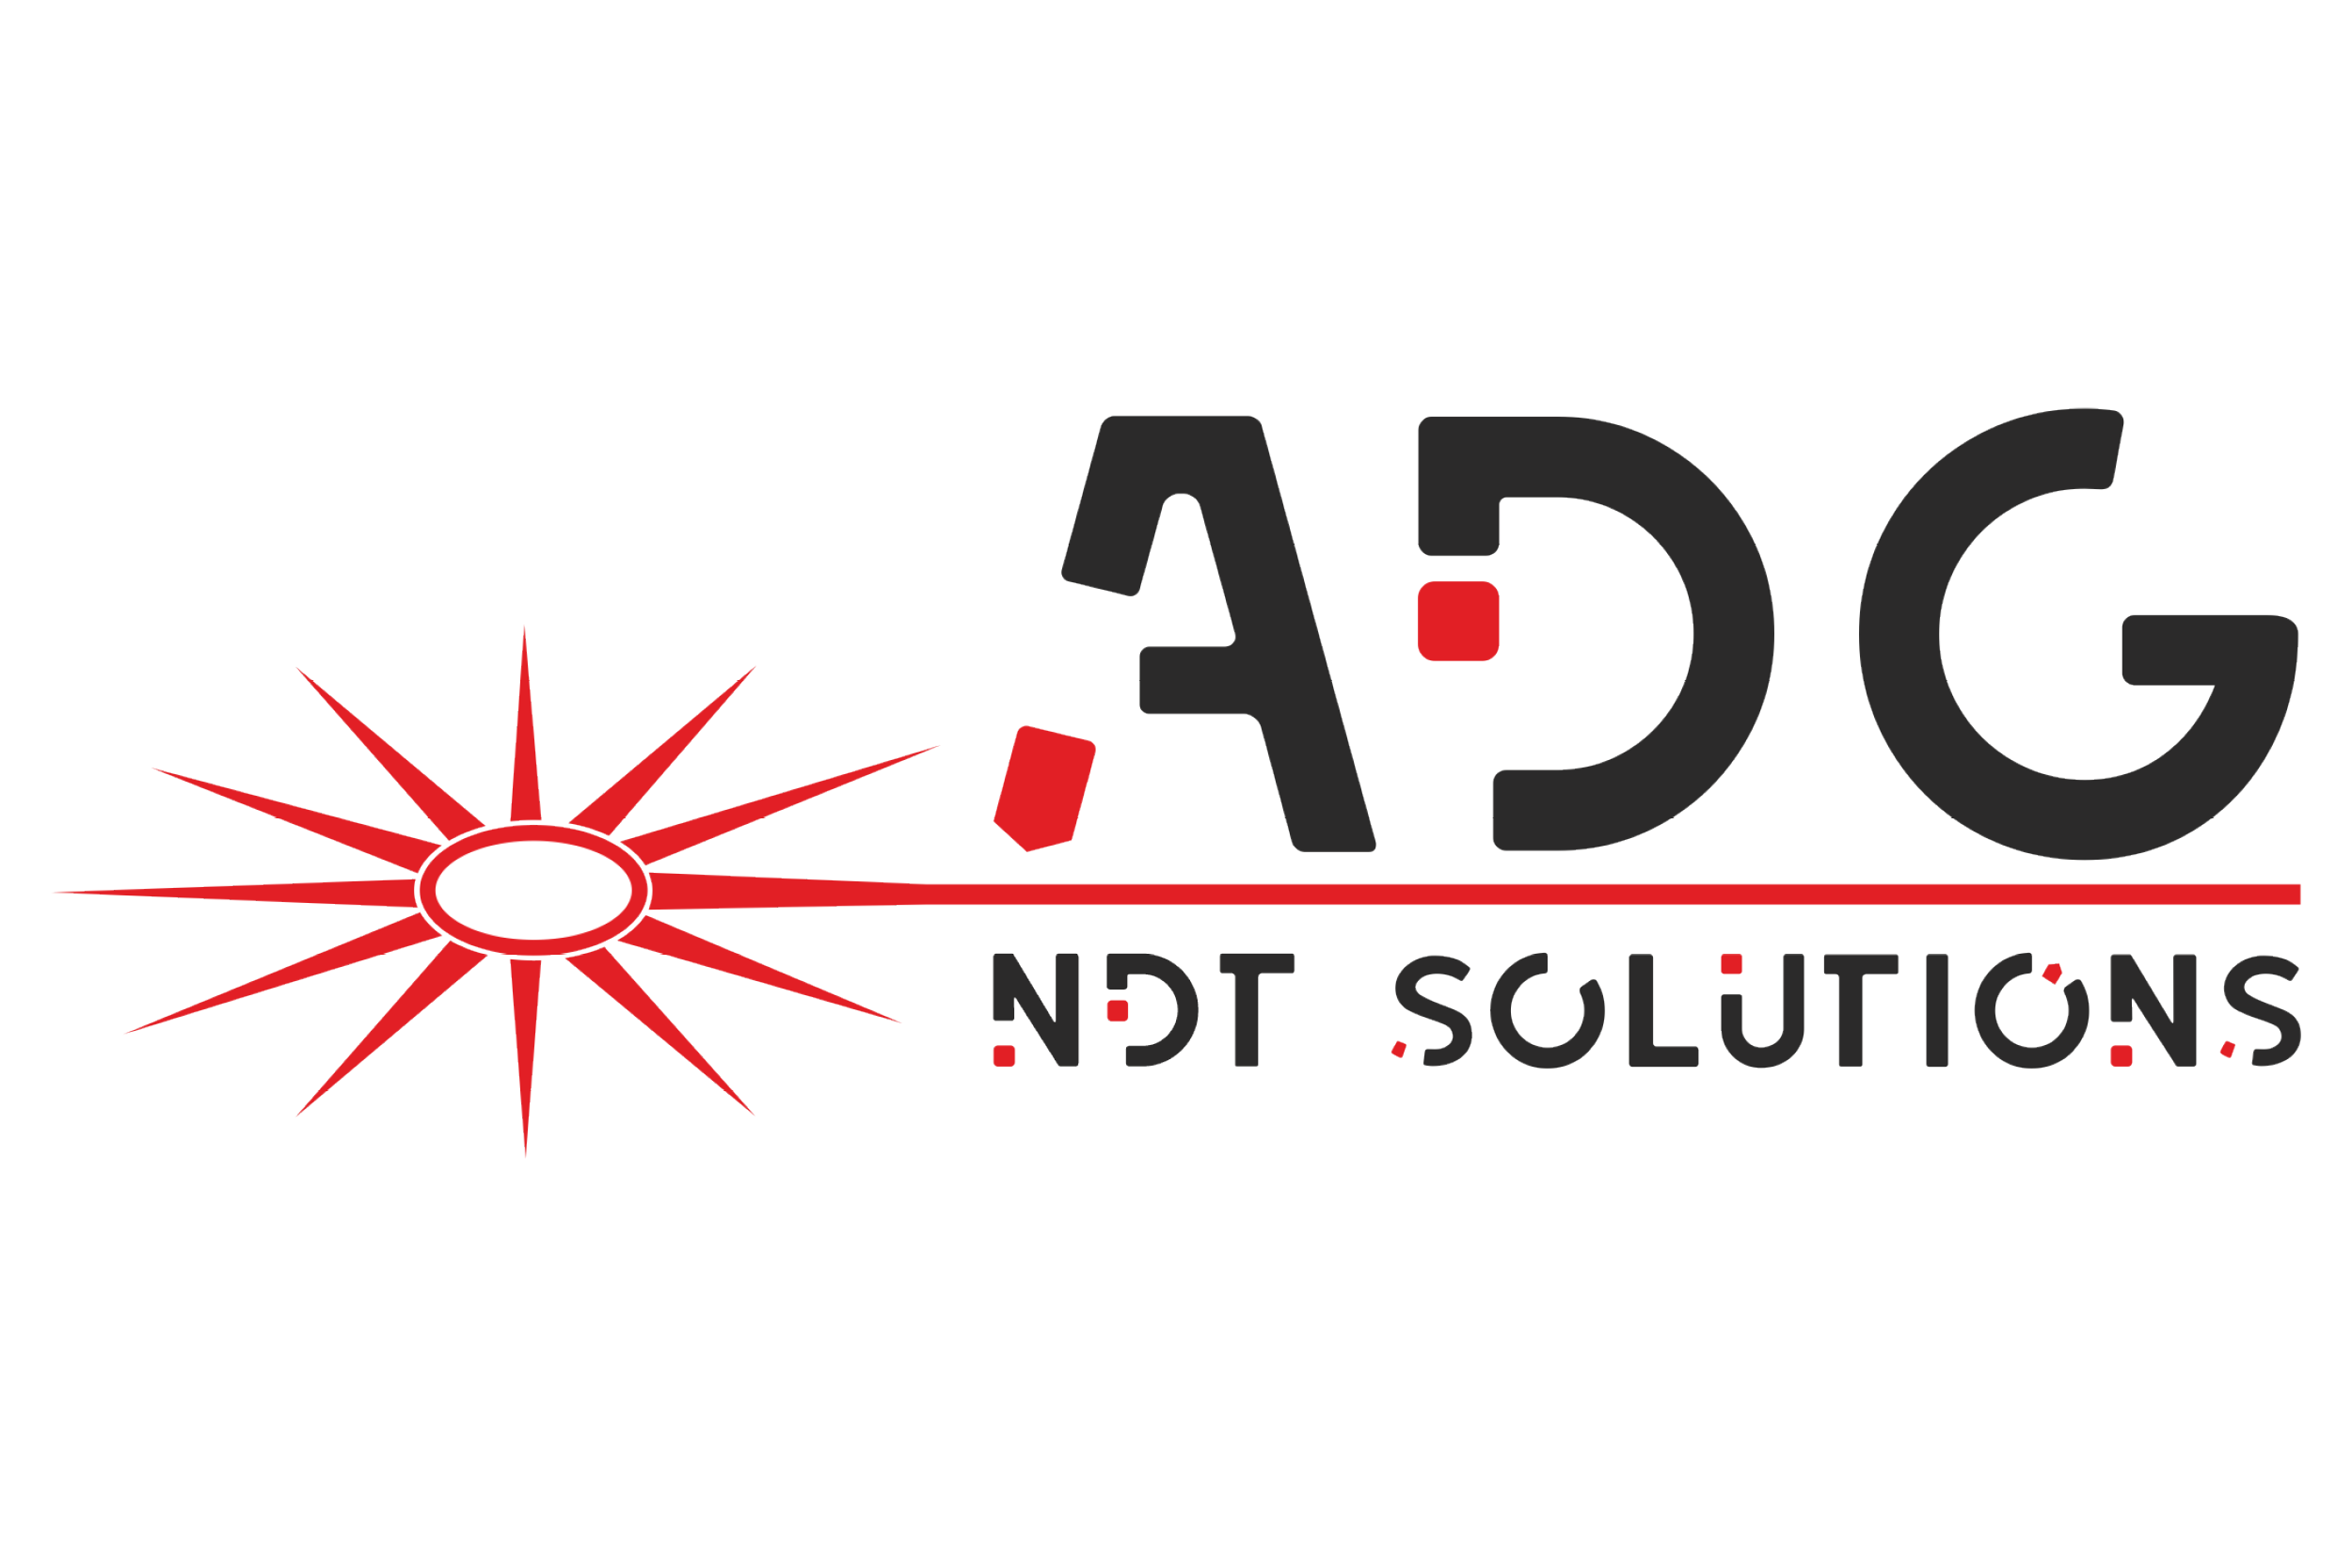 Logo ADG